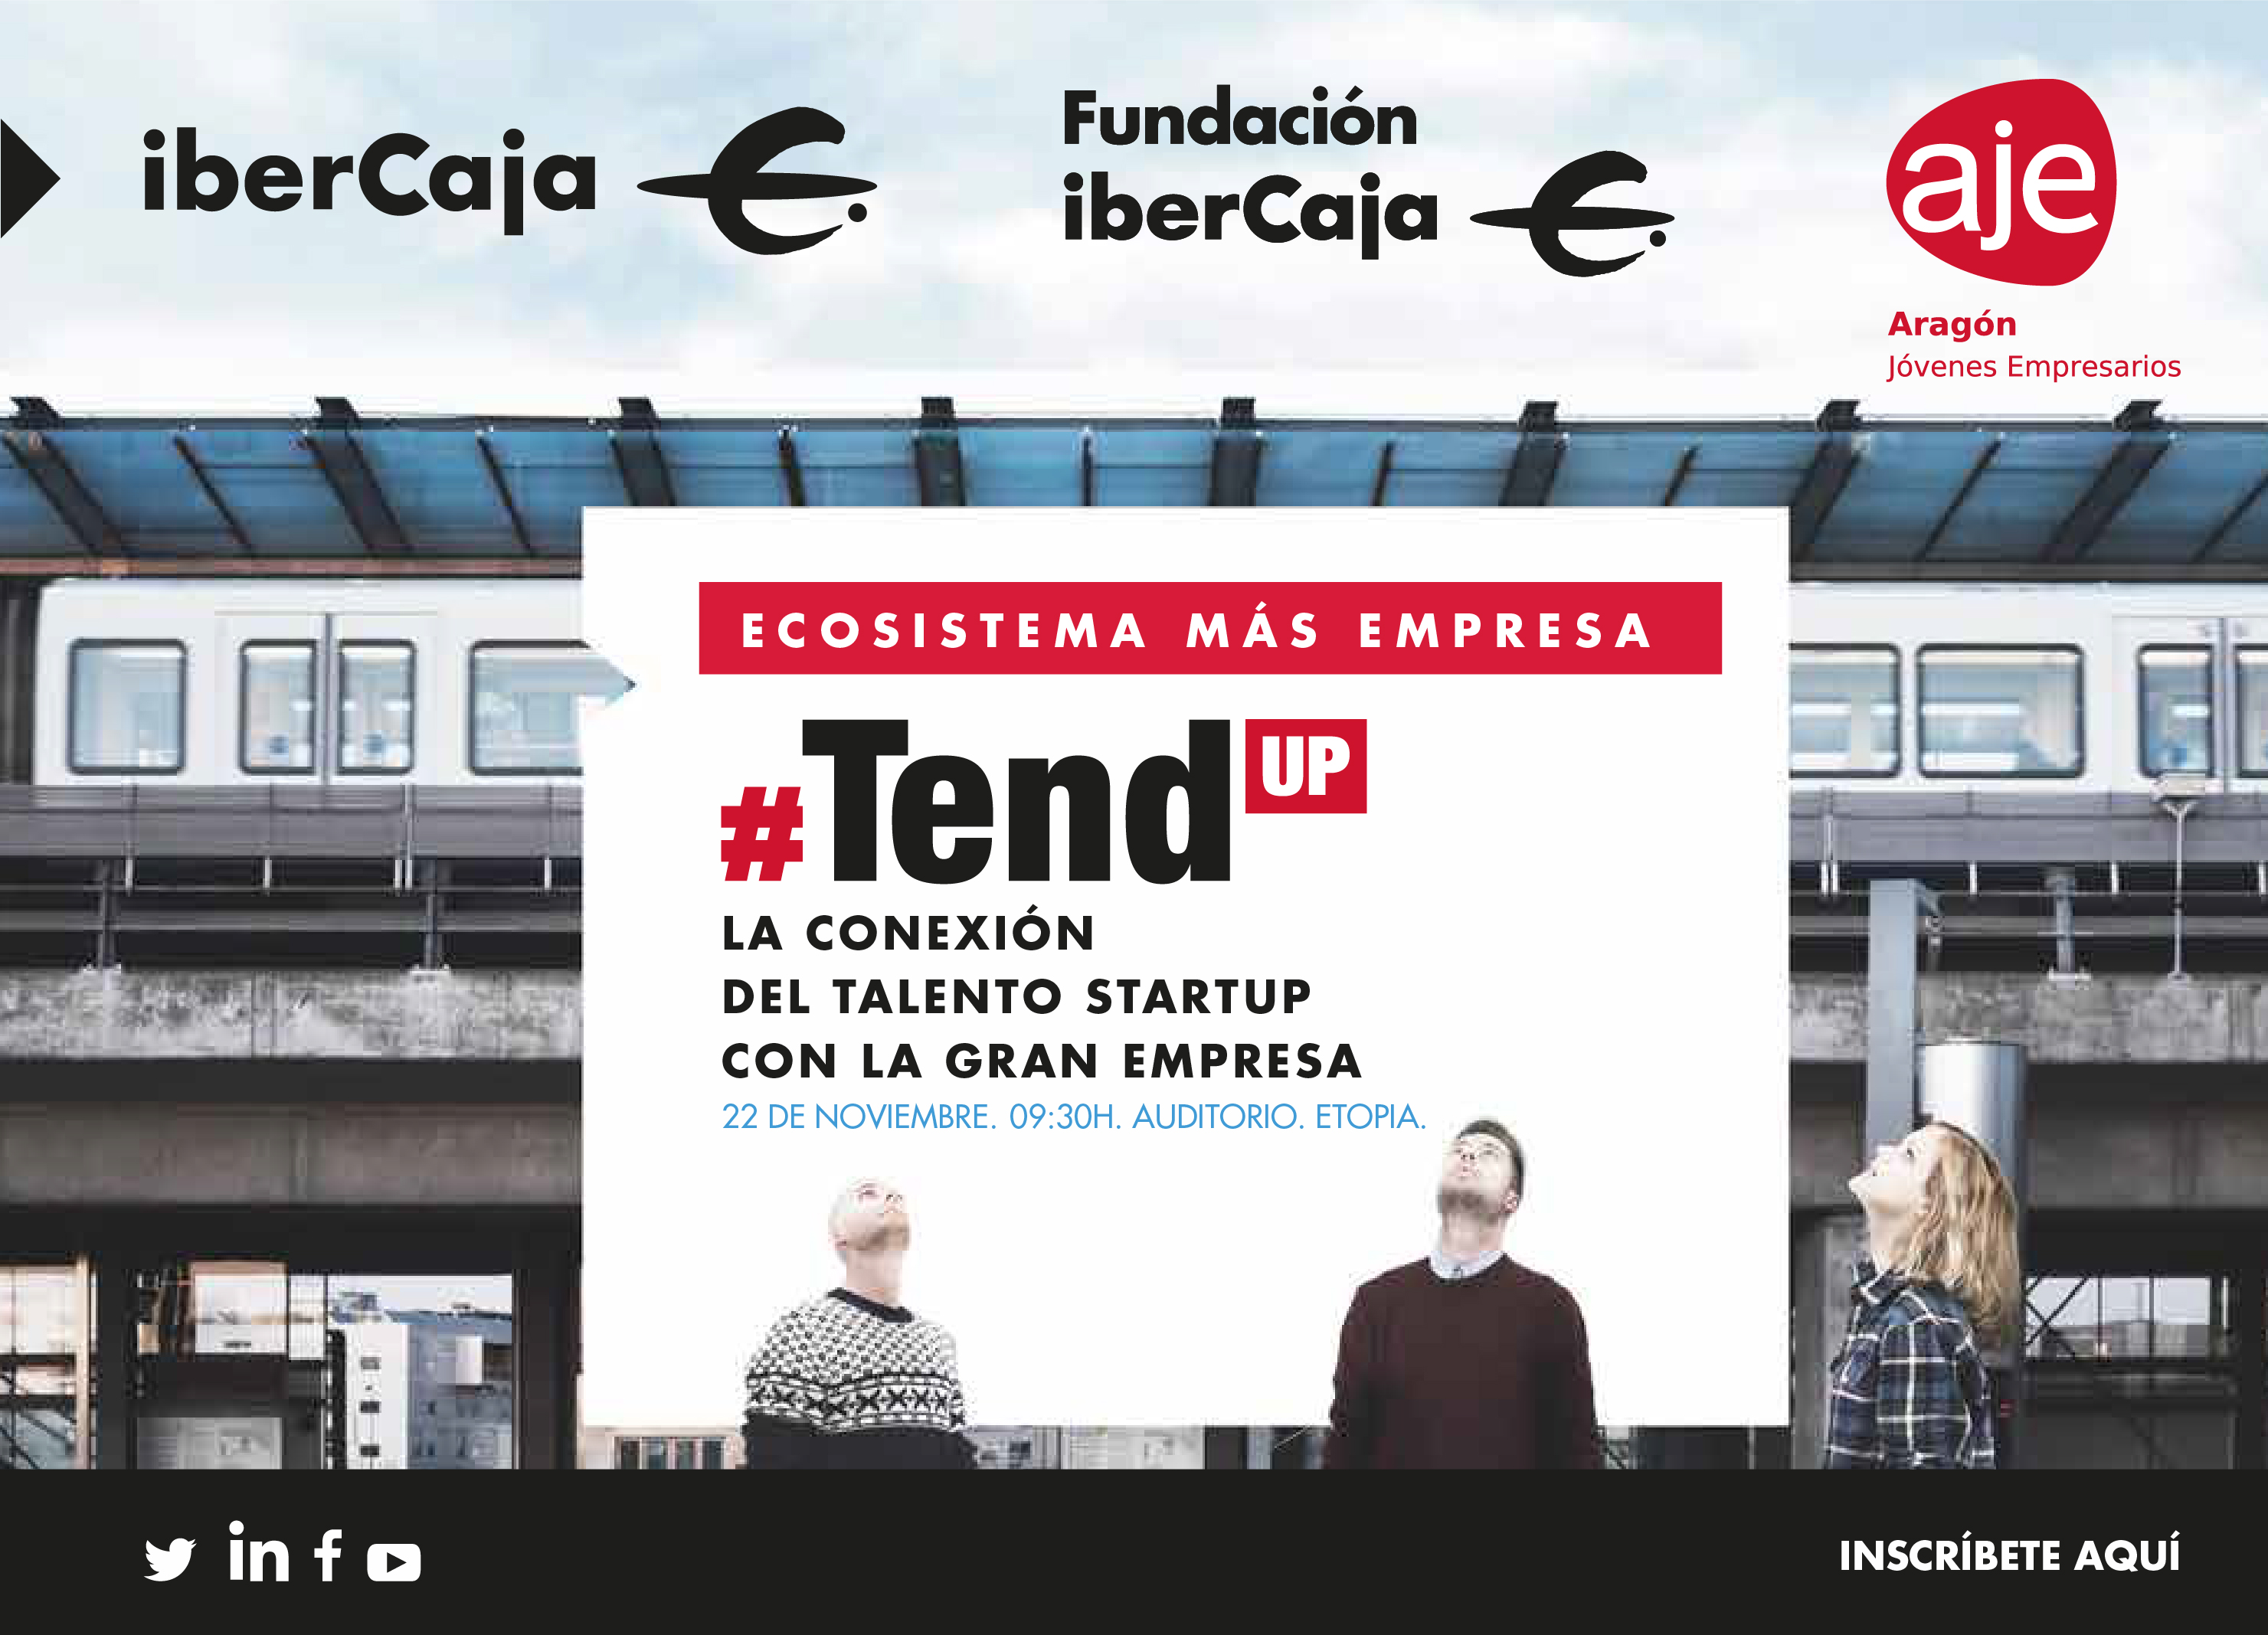 Emprendedor: dale al REC y envía tu vídeo para ser protagonista en #TendUp